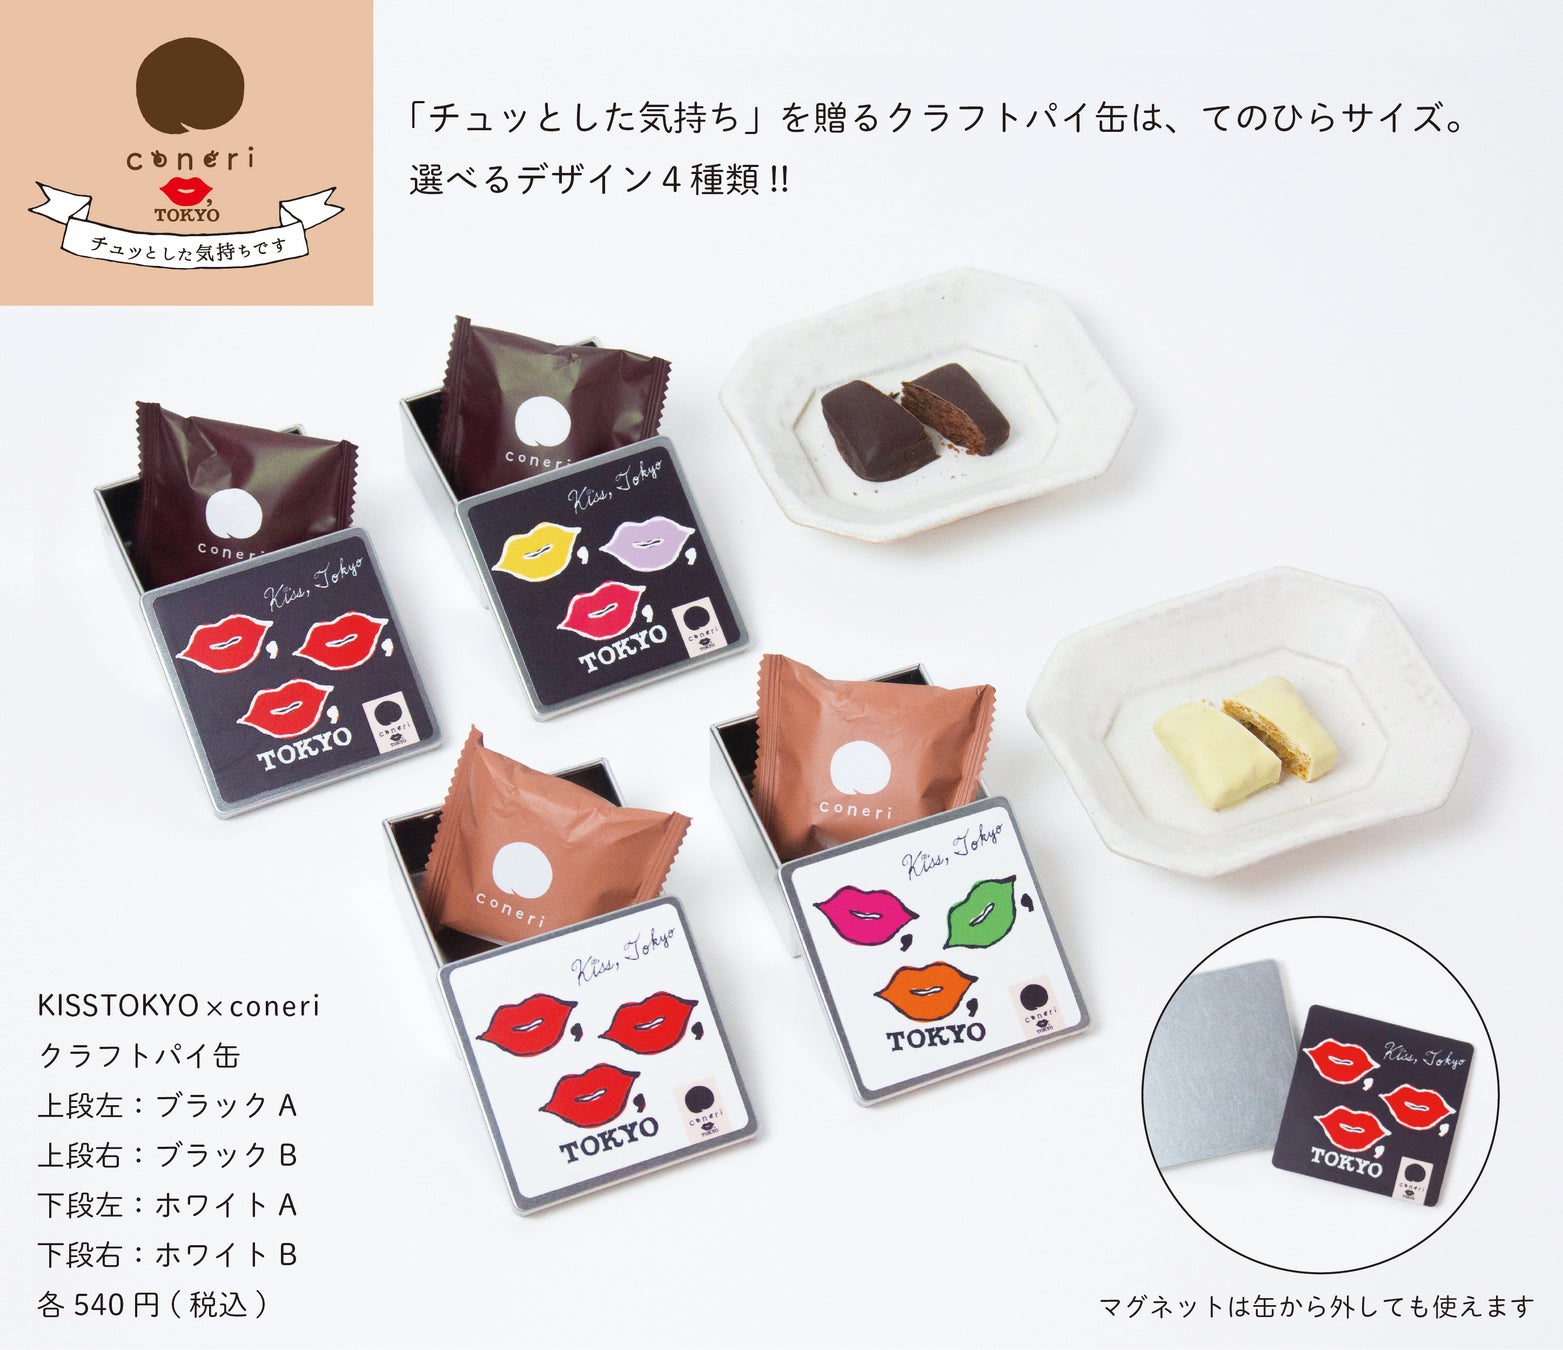 「KISS,TOKYO × coneri クラフトパイ缶（ブラック/ホワイト）」〜チュッとした気持ちです〜 と題し3/18(土)より新発売。生活の節目を迎える季節に最適な、ちょっとした贈り物に。